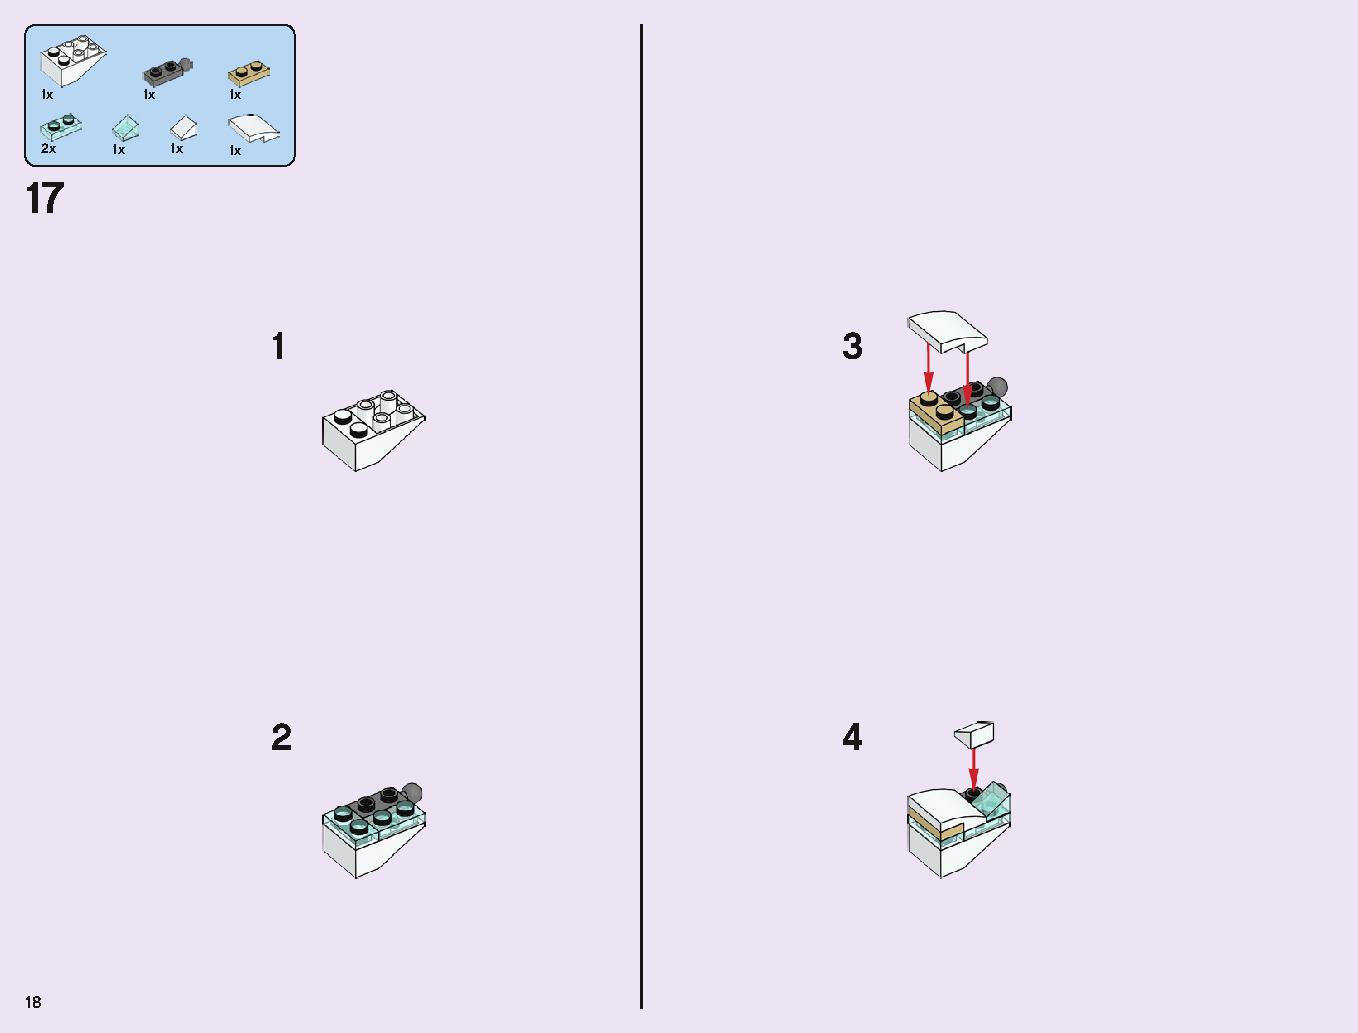 アナと雪の女王 “アイスキャッスル・ファンタジー” 43172 レゴの商品情報 レゴの説明書・組立方法 18 page